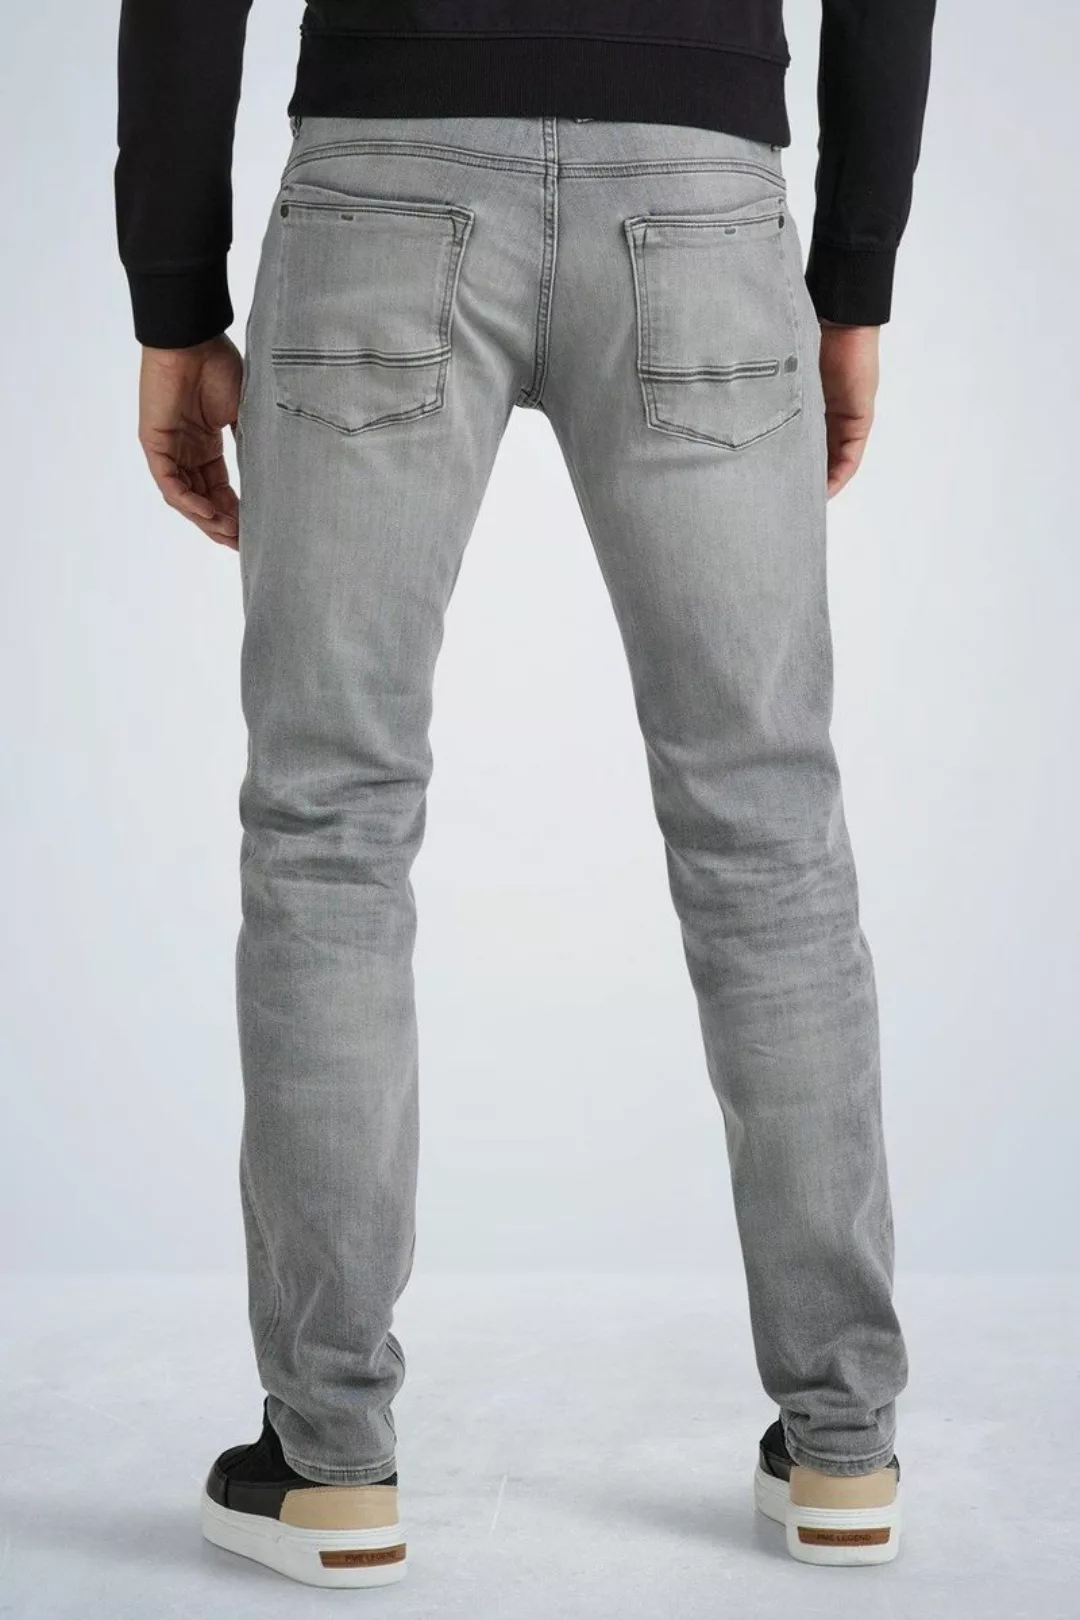 PME Legend Commander 3.0 Jeans Grau - Größe W 32 - L 34 günstig online kaufen